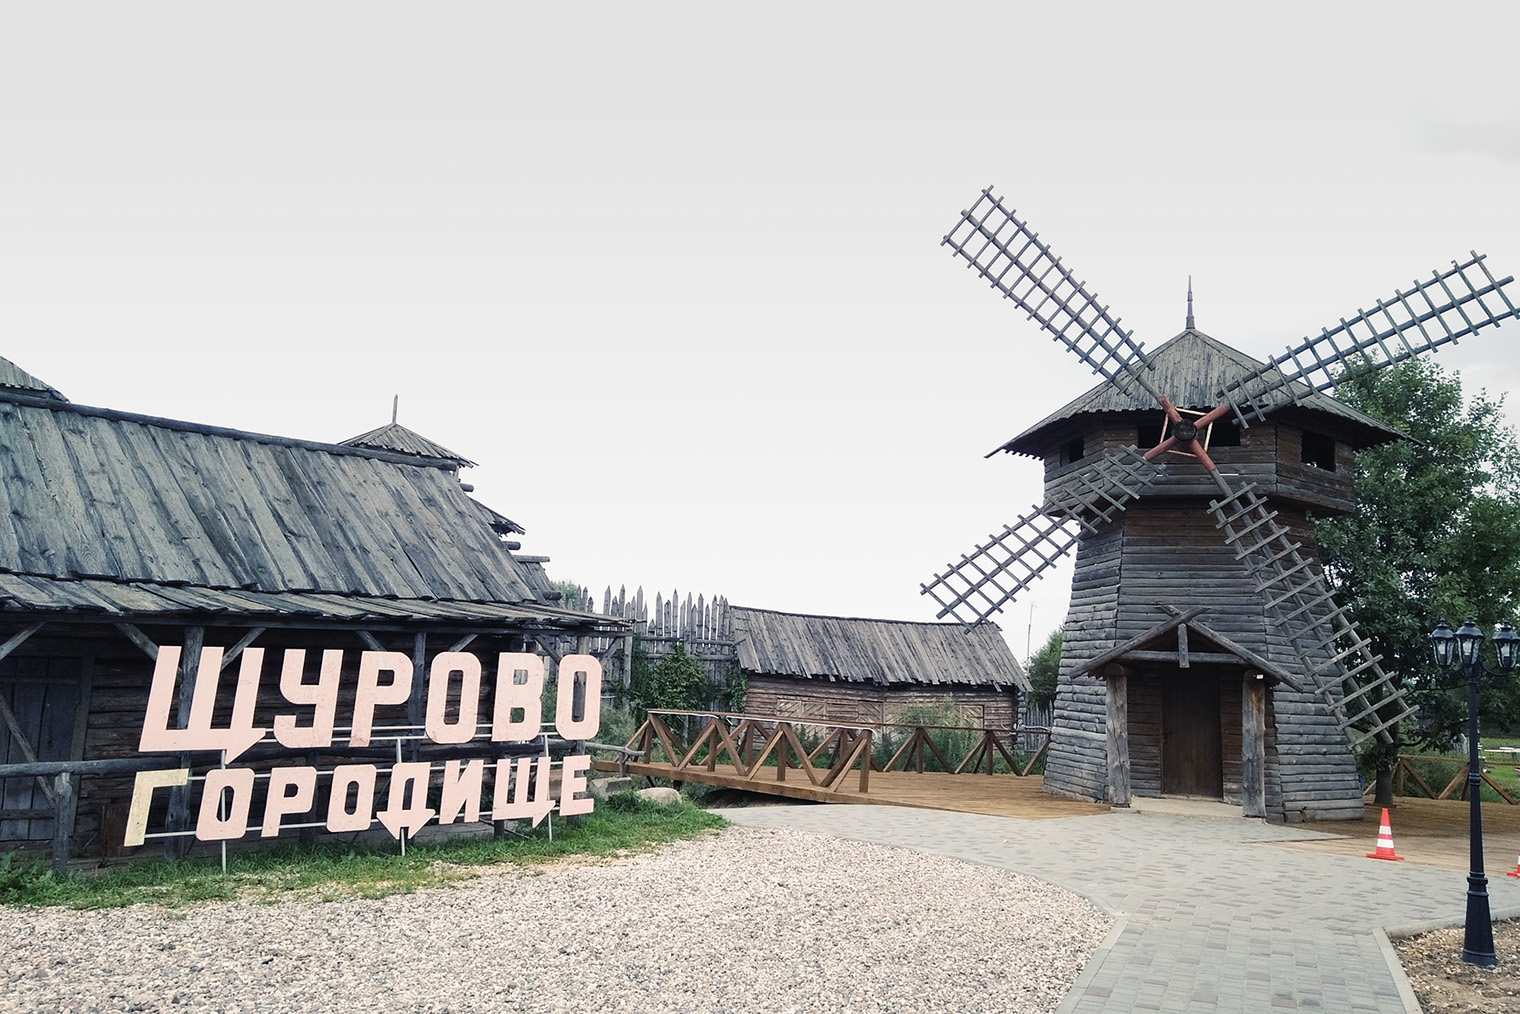 В «Щуровом городище» сохранились декорации фильма «Царь» 2009 года